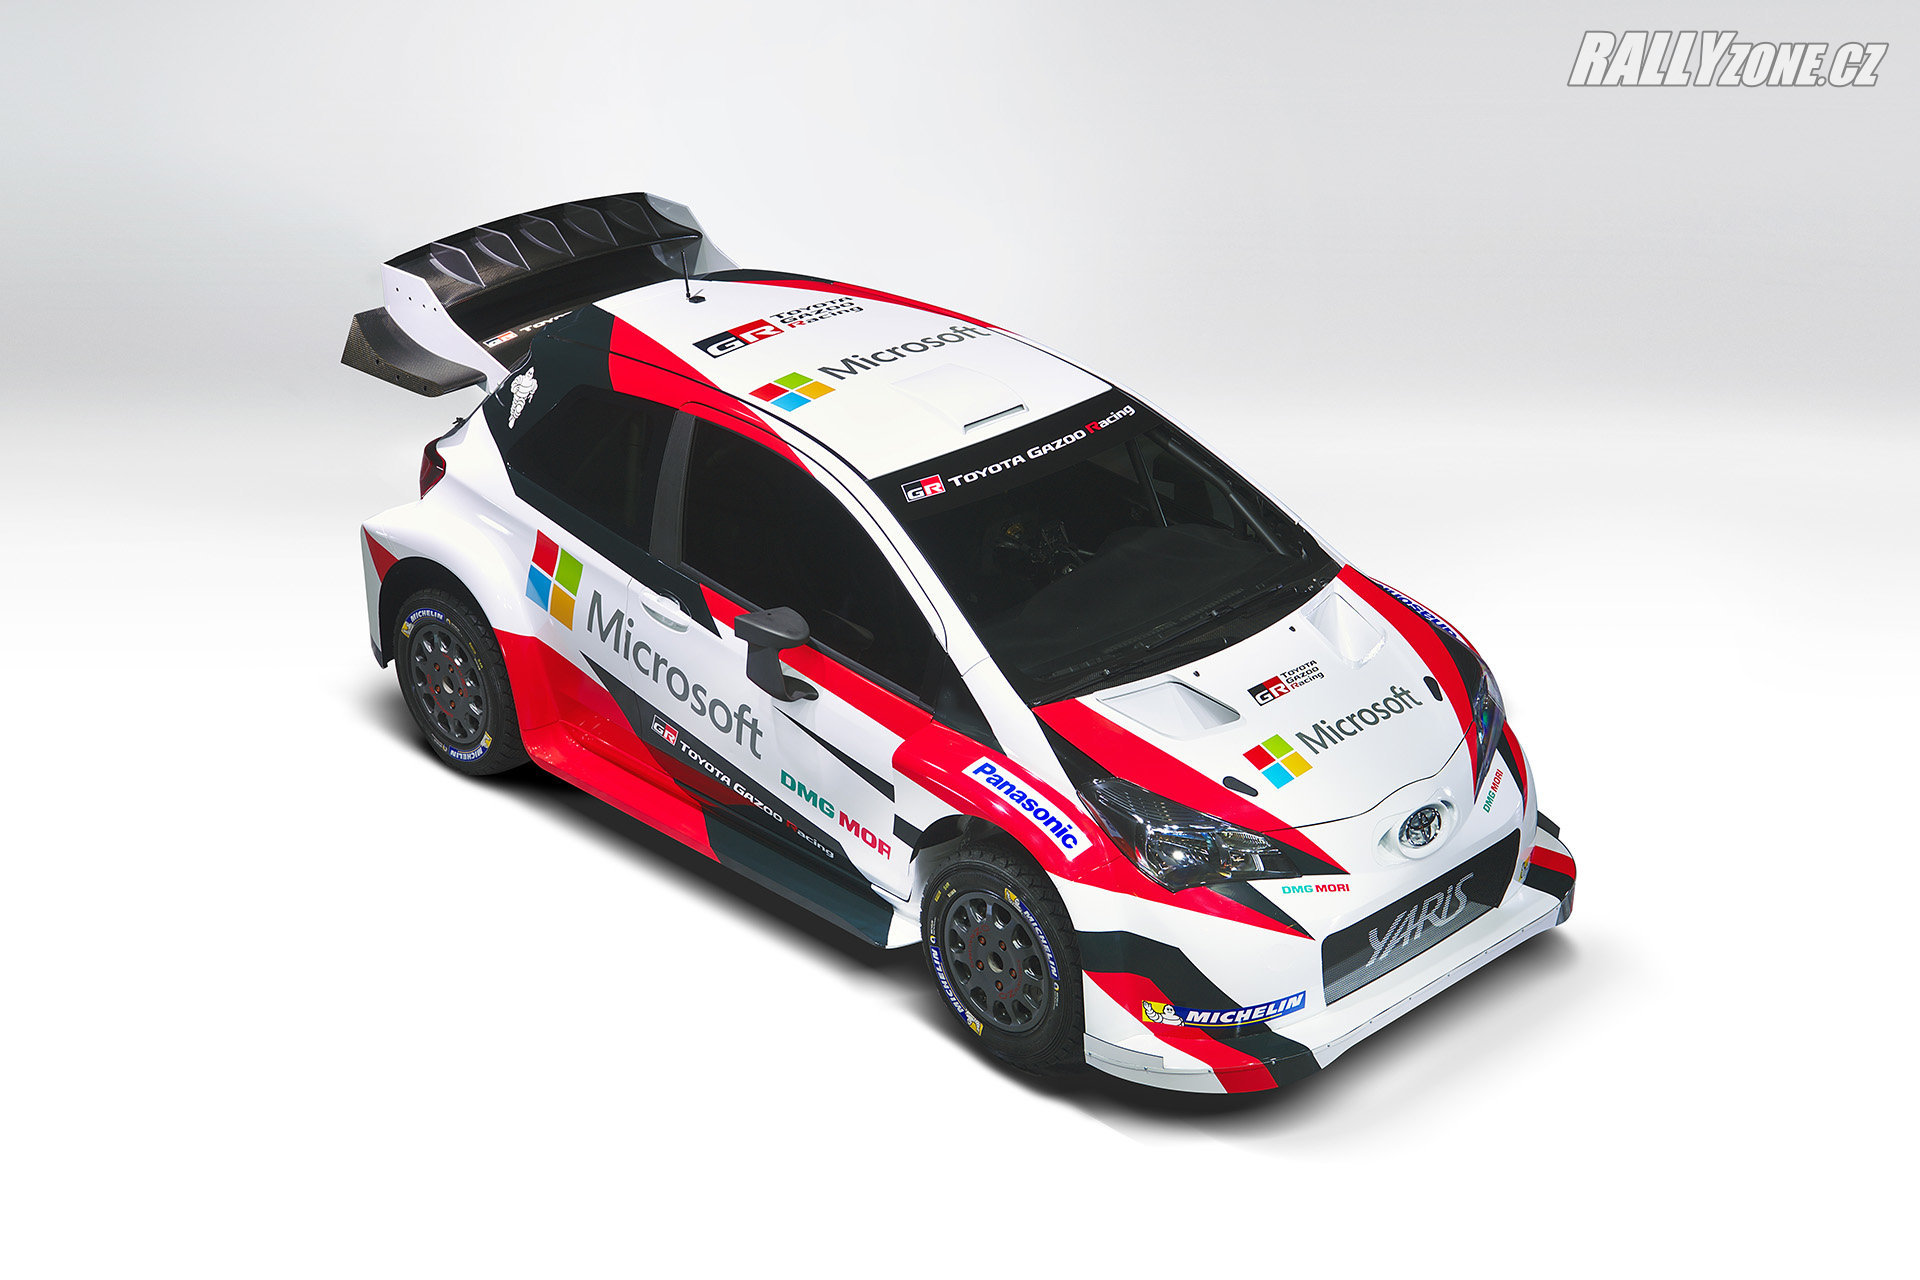 Toyota Yaris WRC - tento speciál Hirvonen vloni měl možnost testovat